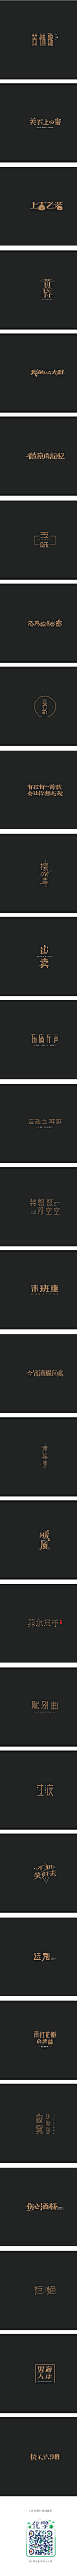 小刚周传雄的歌-字体传奇网-中国首个字体品牌设计师交流网